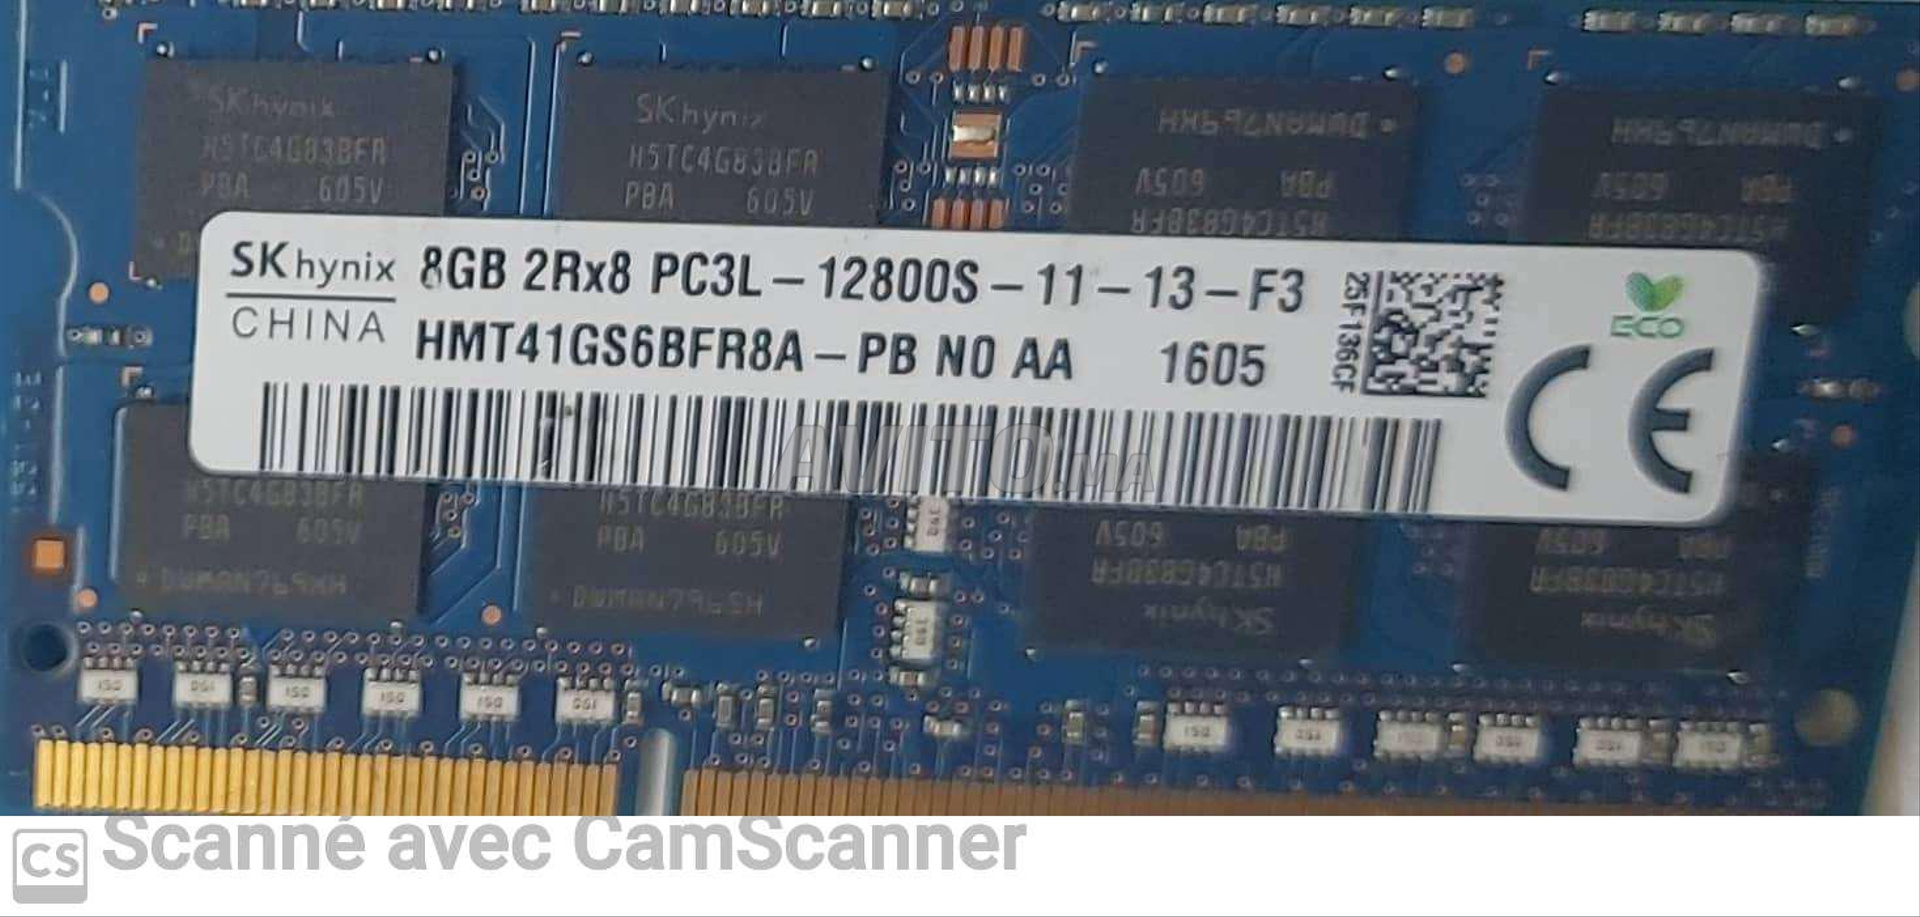 Barette Mémoire 8Go Apacer DDR3 1600MHz UDIMM (78.C1GFZ.4030C) -   Maroc